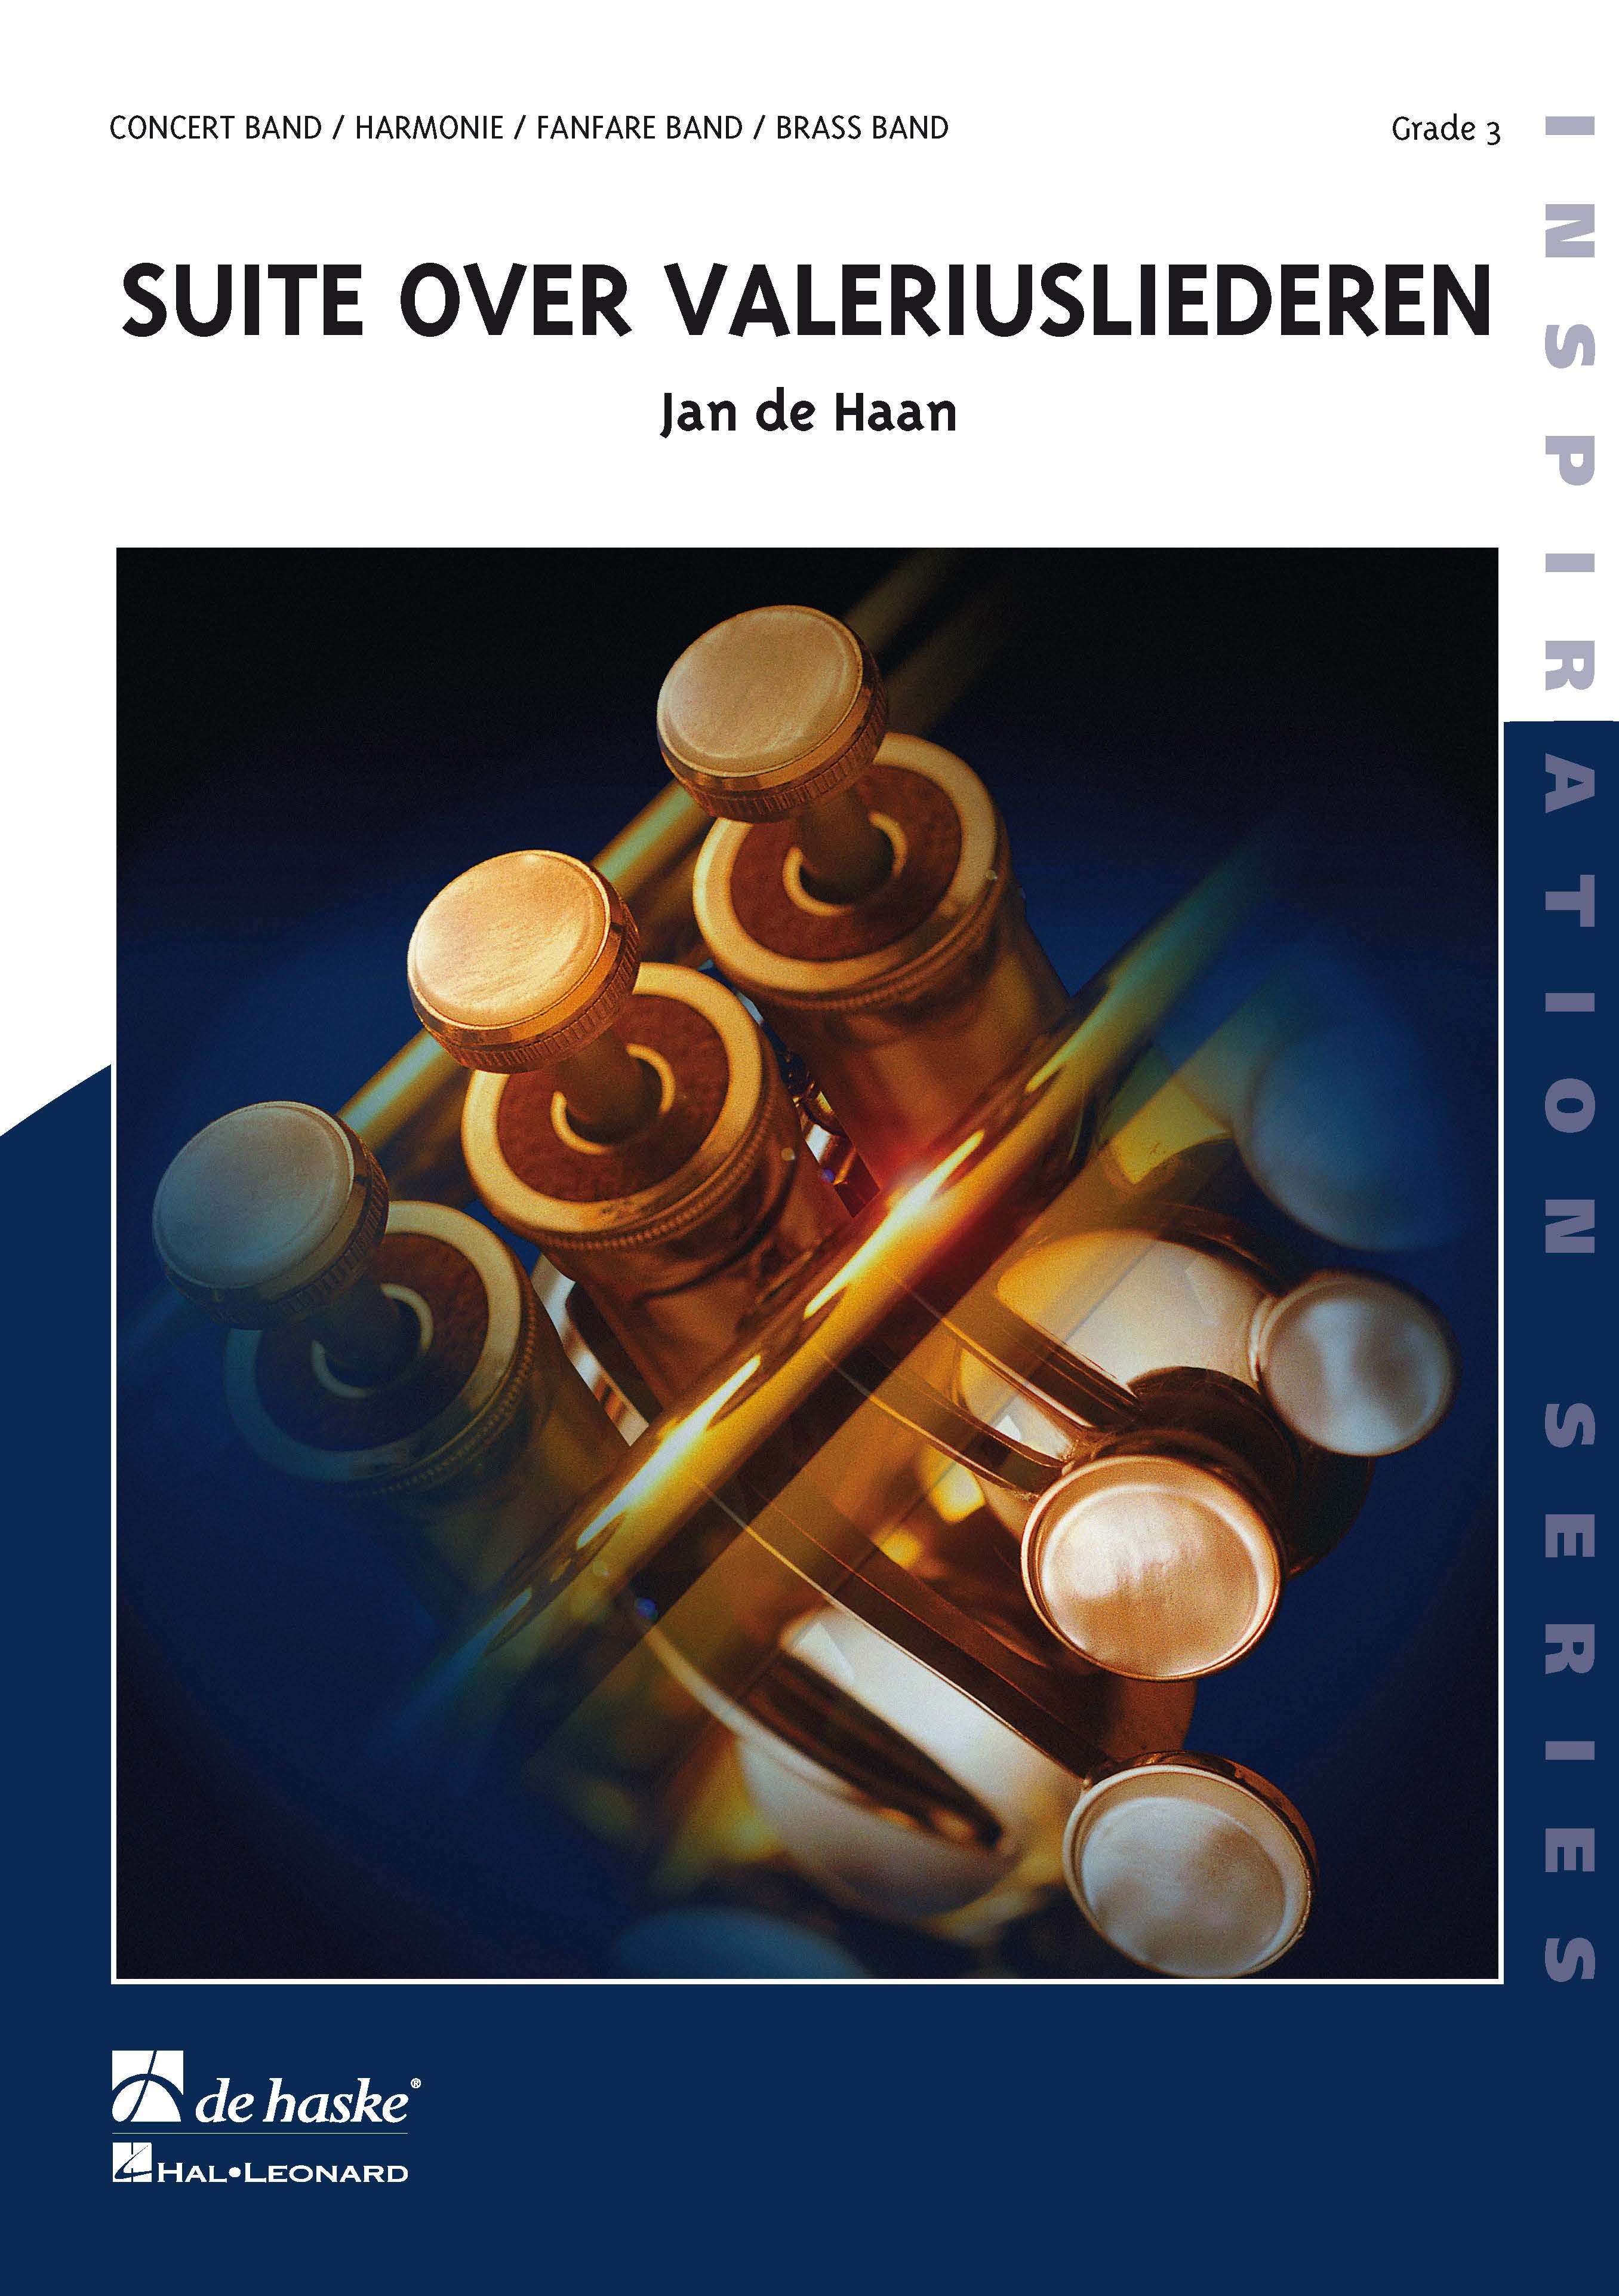 Jan de Haan: Suite over Valeriusliederen: Concert Band: Score